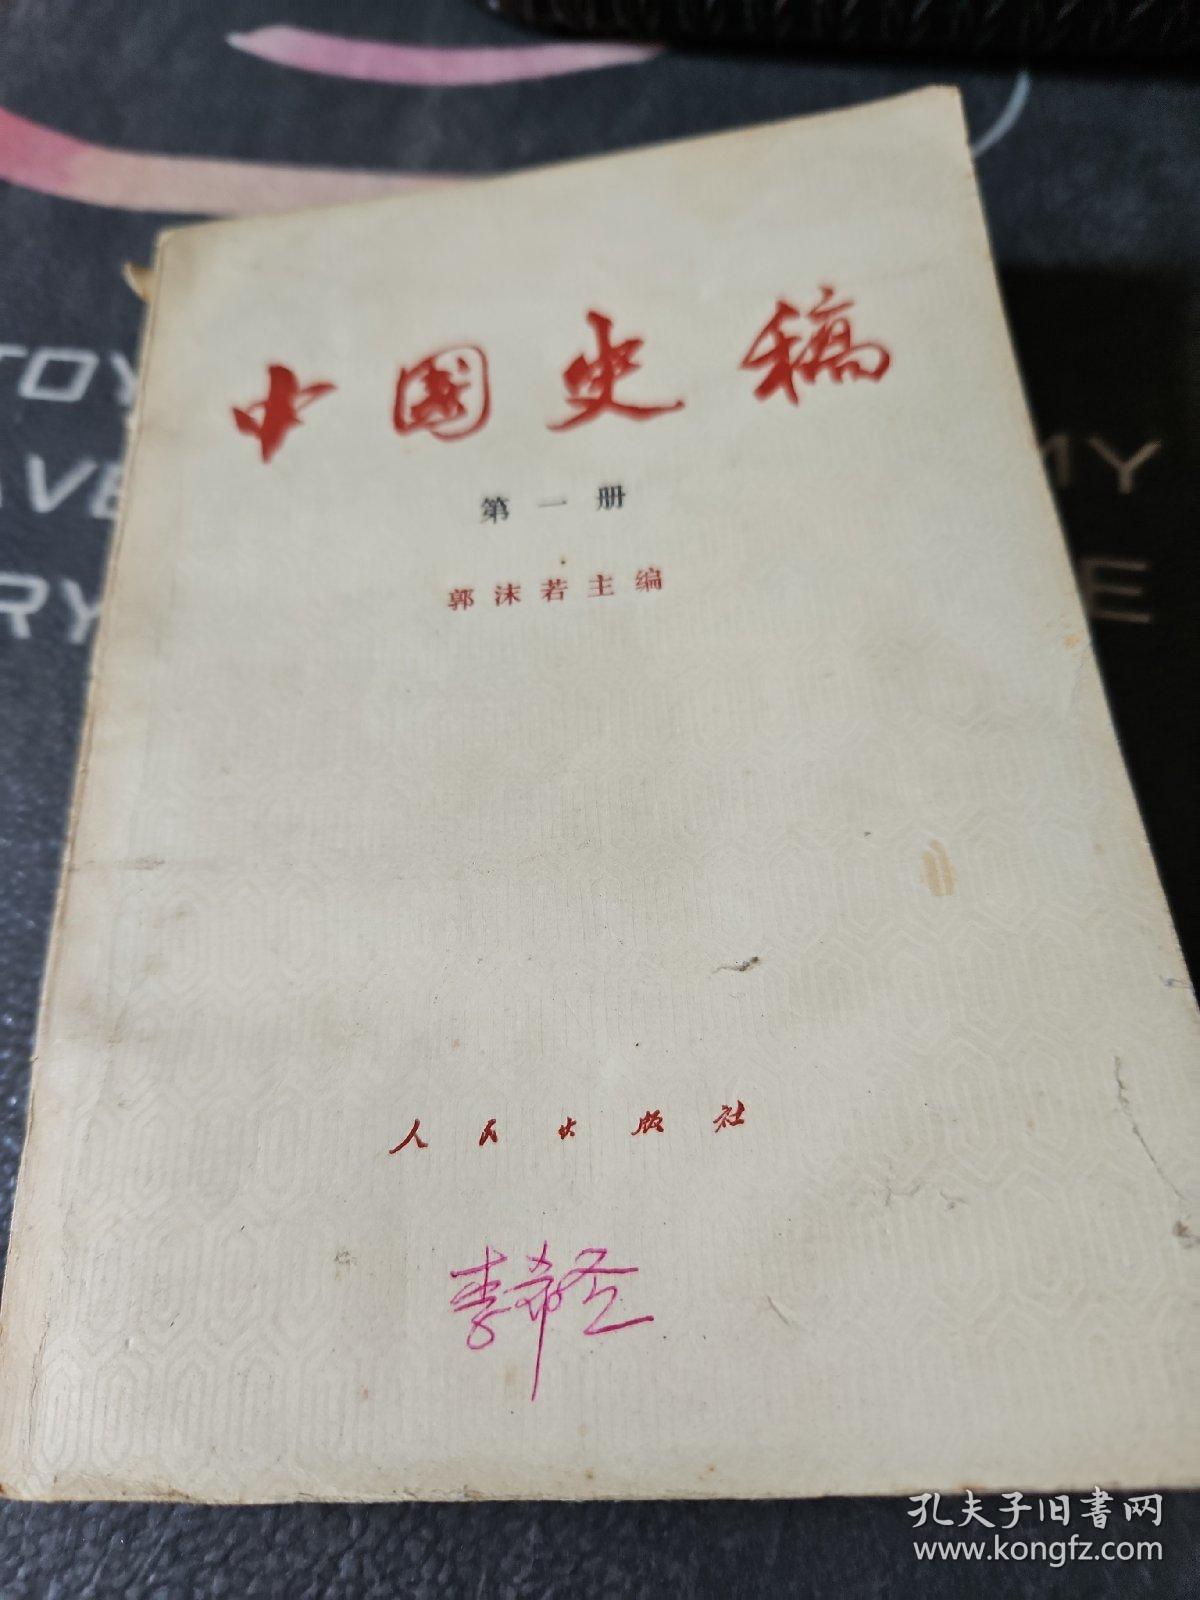 中国史稿第一册